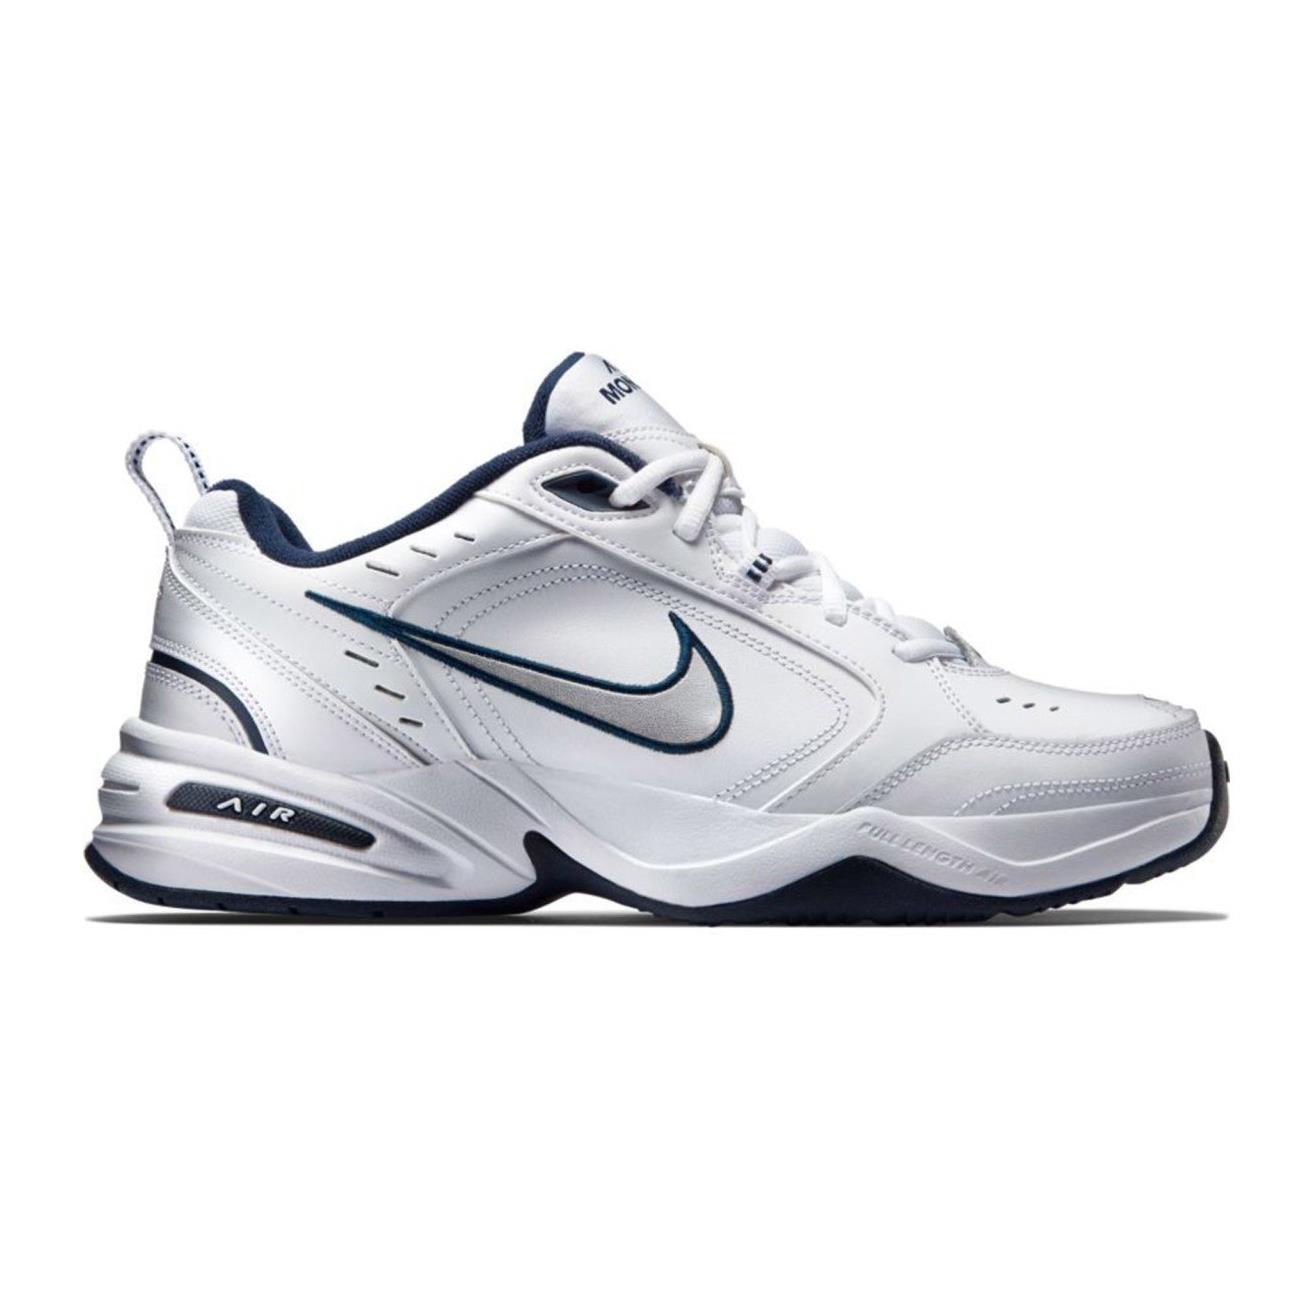 Nike Erkek Koşu-Yürüyüş Ayakkabısı Air Monarch Iv 415445-102